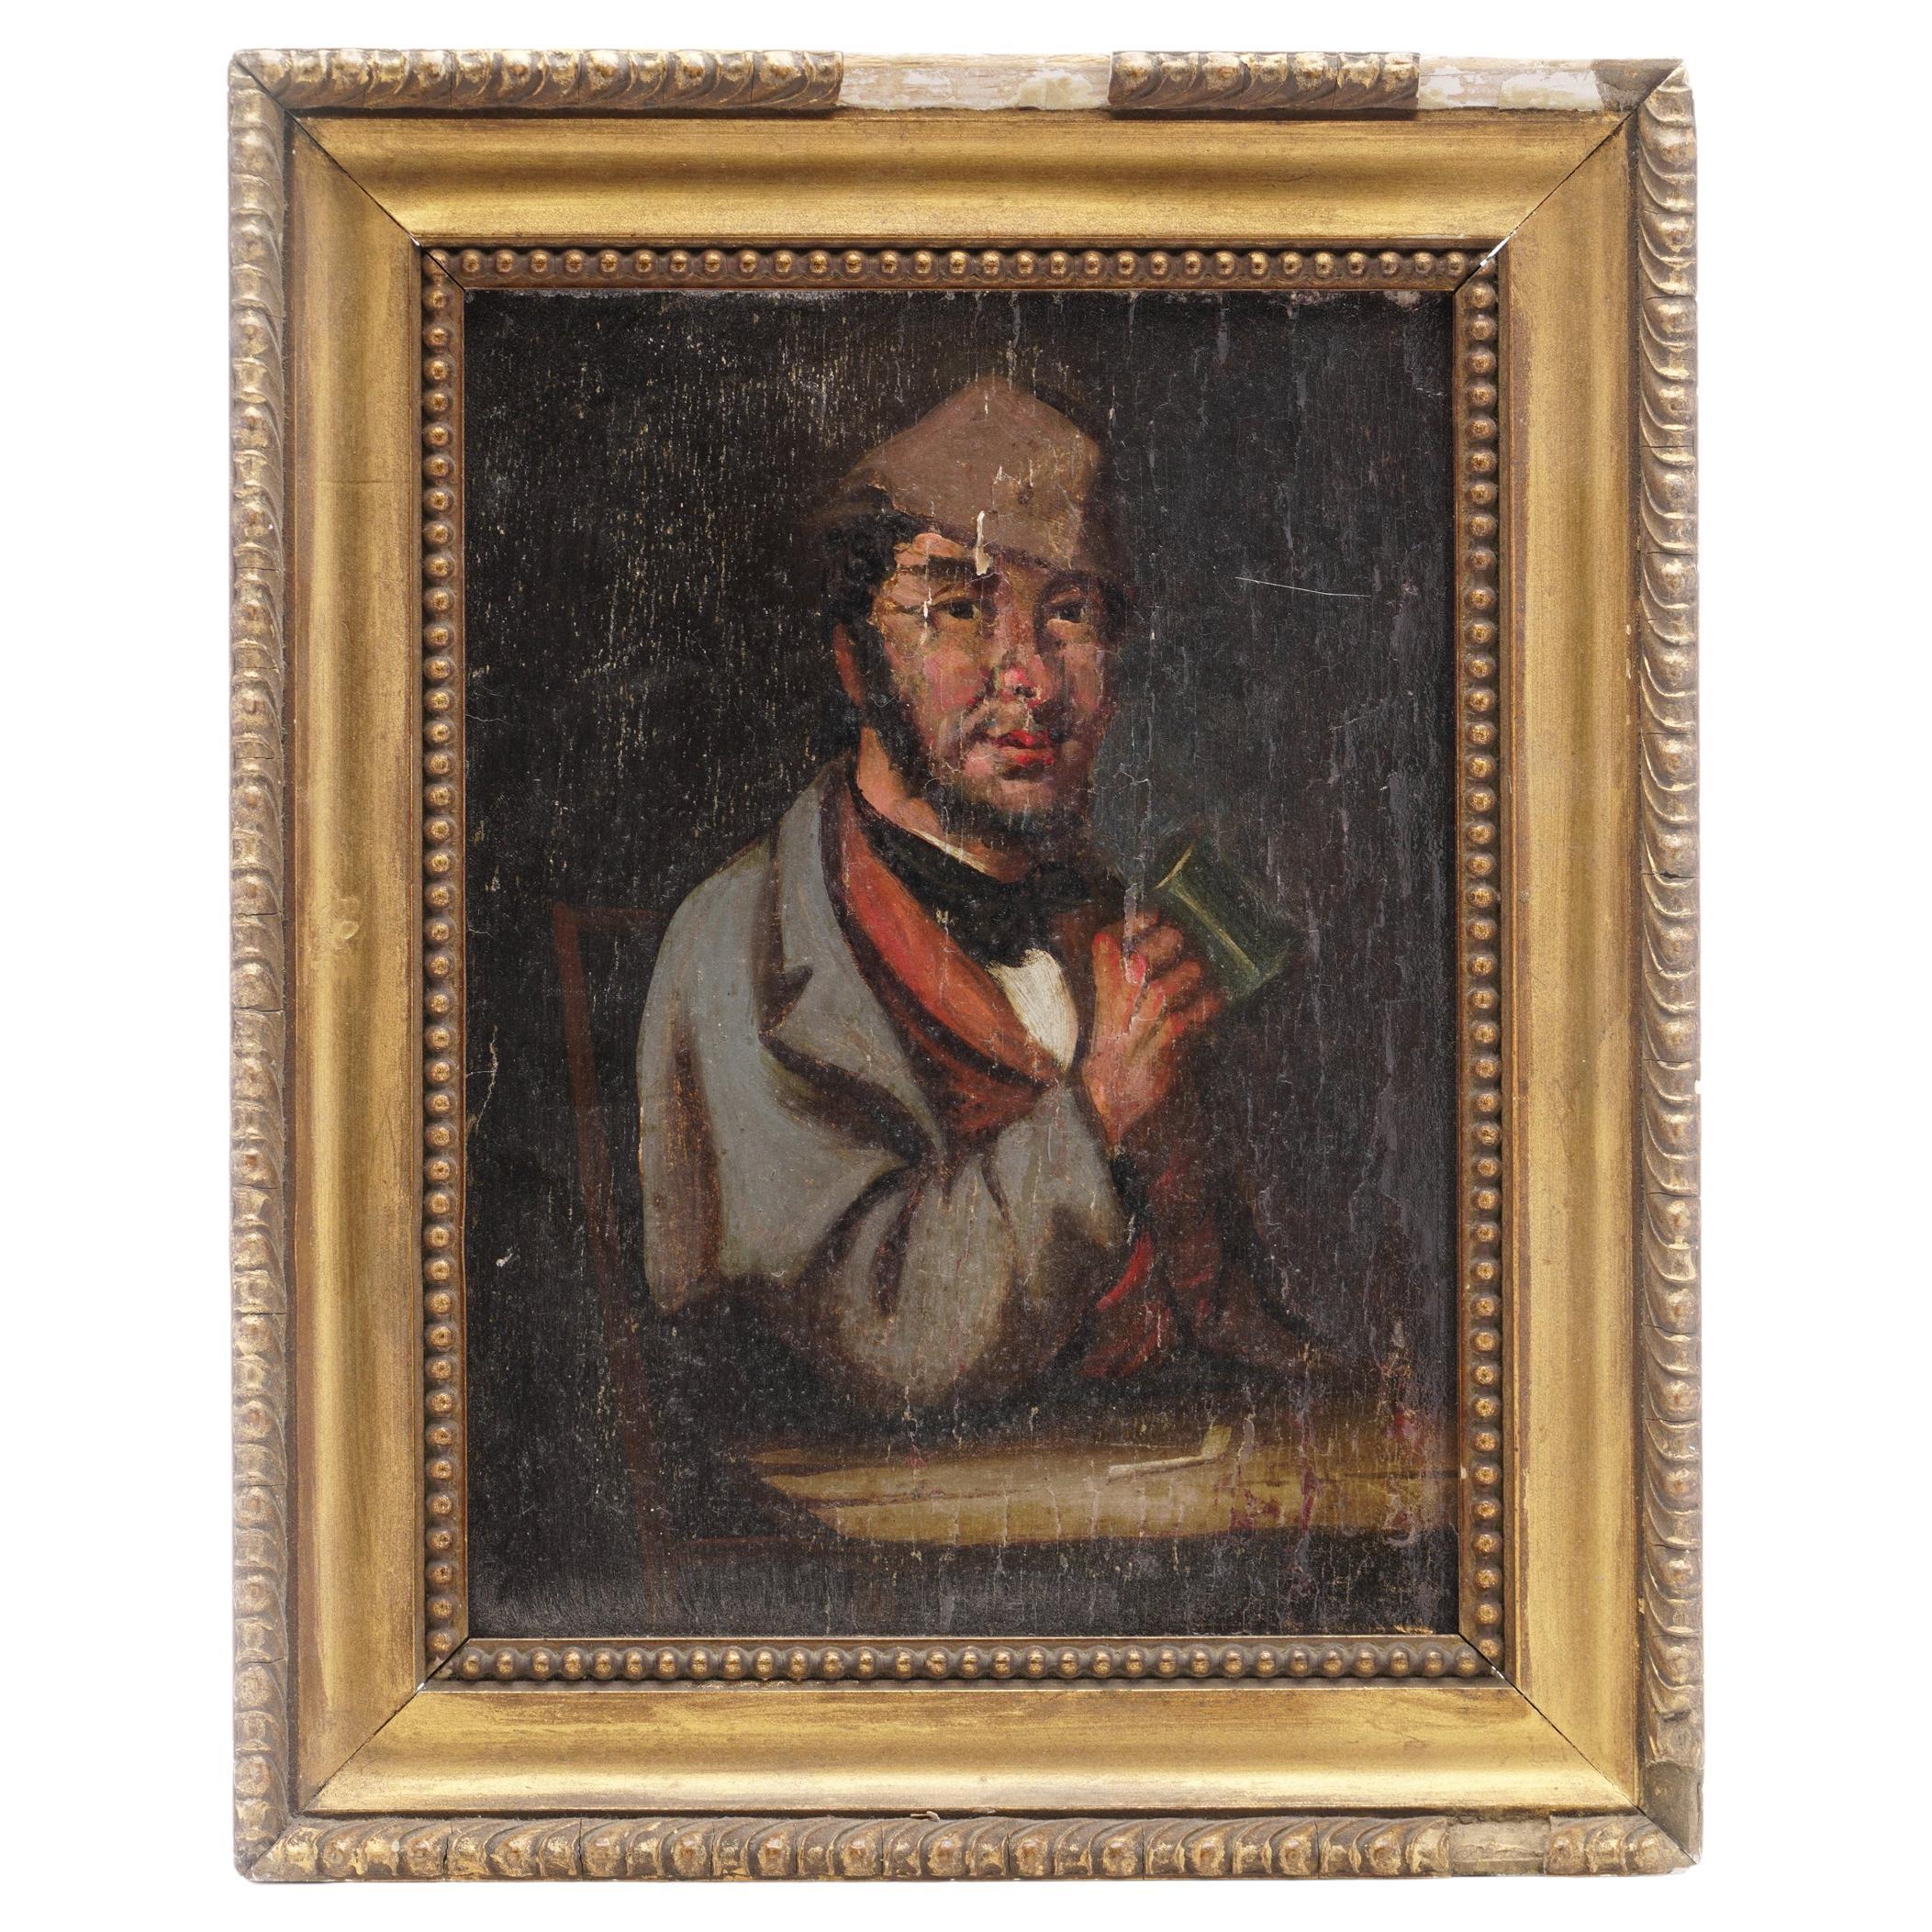 Ölgemälde auf Holzplatte aus dem 19. Jahrhundert, Gemälde eines Mannes, der in einer Tafel getrunken hat, zeigt